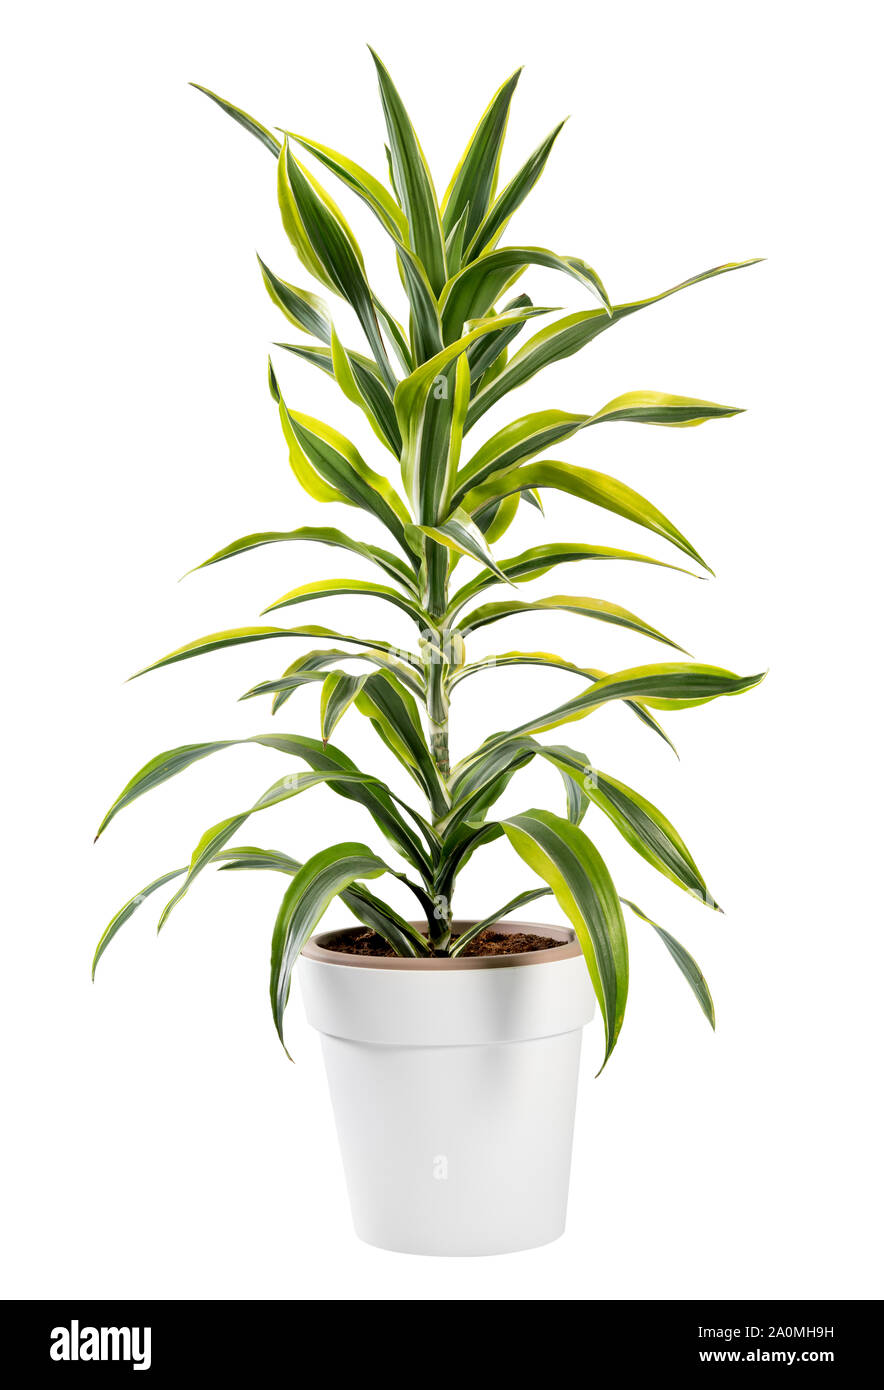 Dracaena isolé plante en pot en pot blanc générique, une plante d'ornement populaire avec ses feuilles panachées Banque D'Images